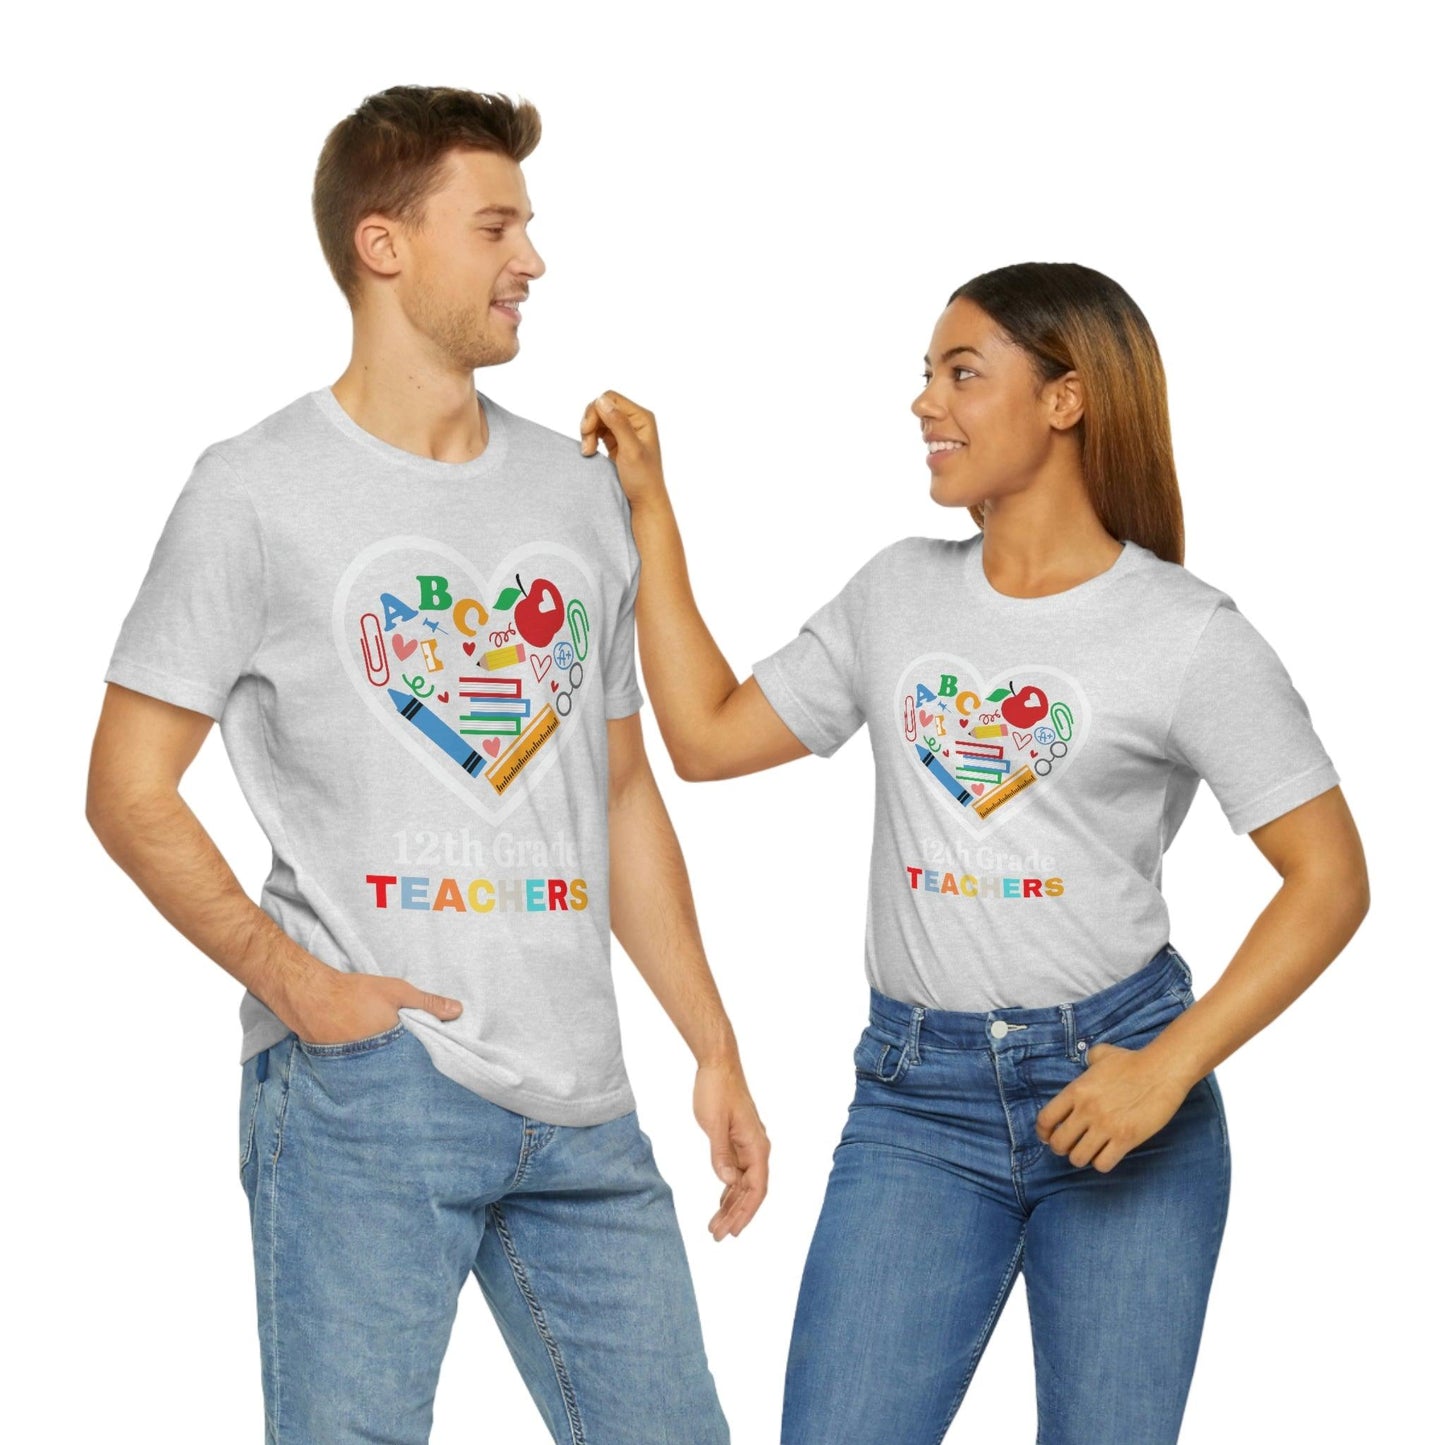 Love 12th Grade Teacher Shirt - Teacher Appreciation Shirt - Gift for teachers